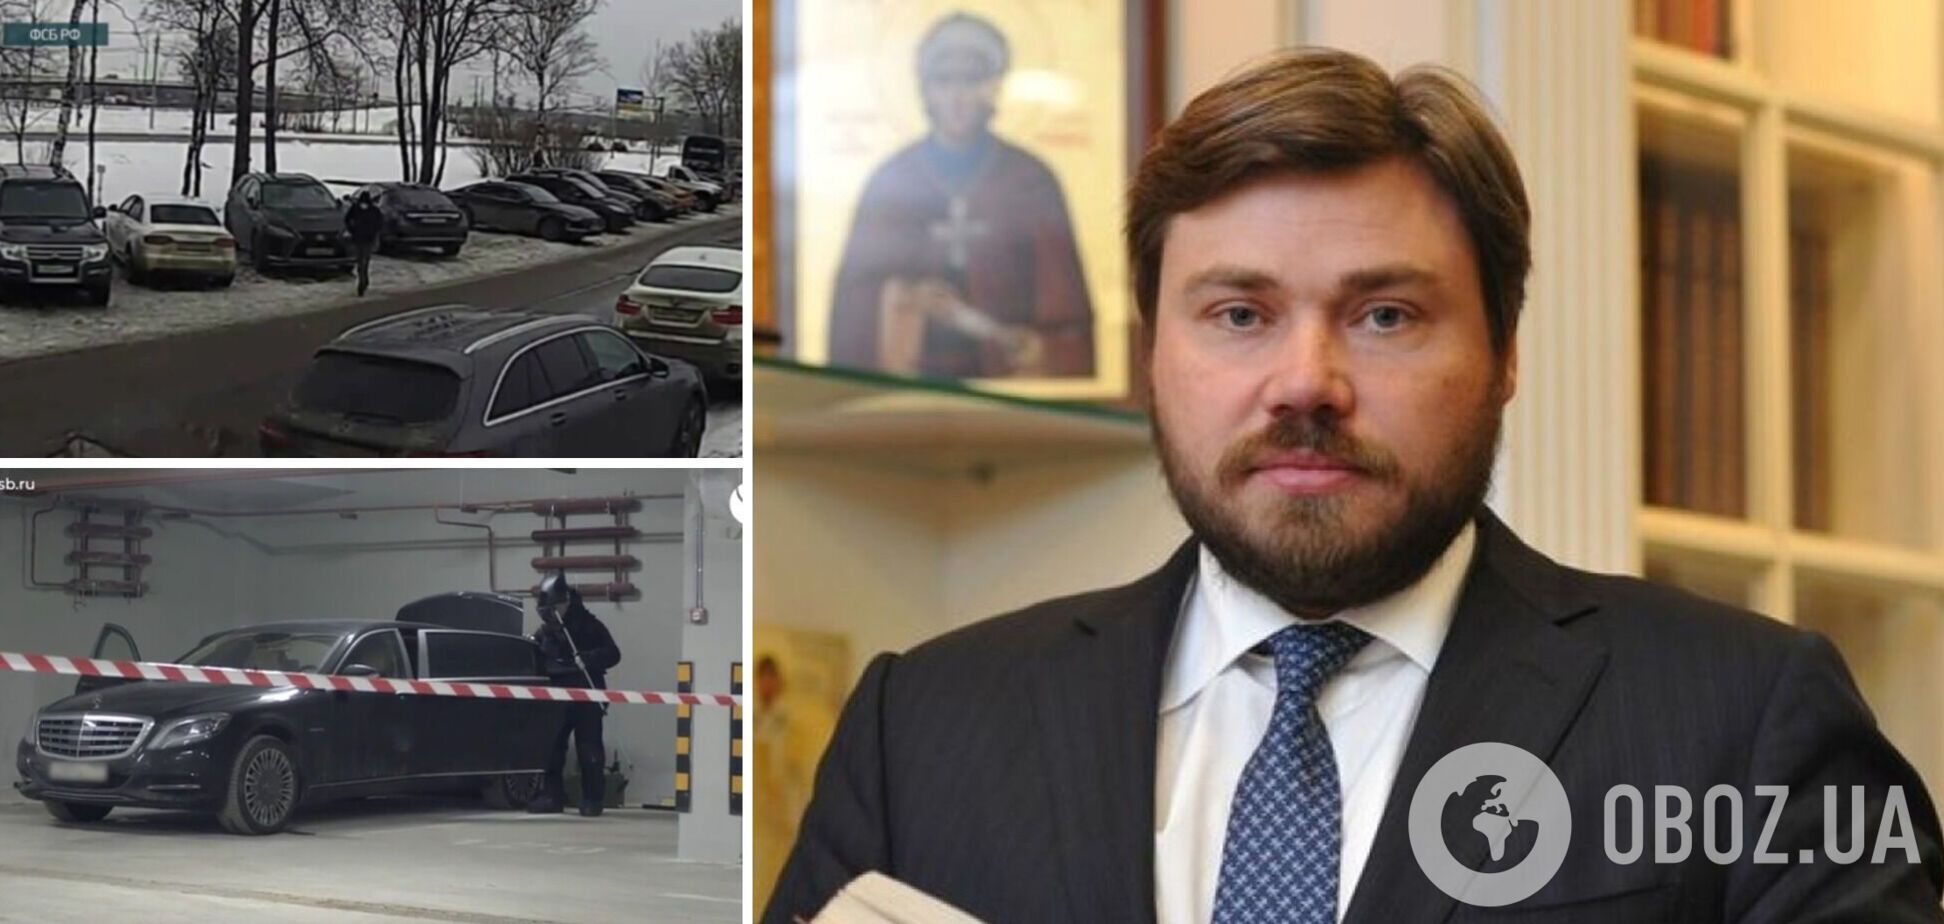 Замінували одне авто, розмінували інше: ФСБ зганьбилася відео 'замаху' на олігарха Малофєєва